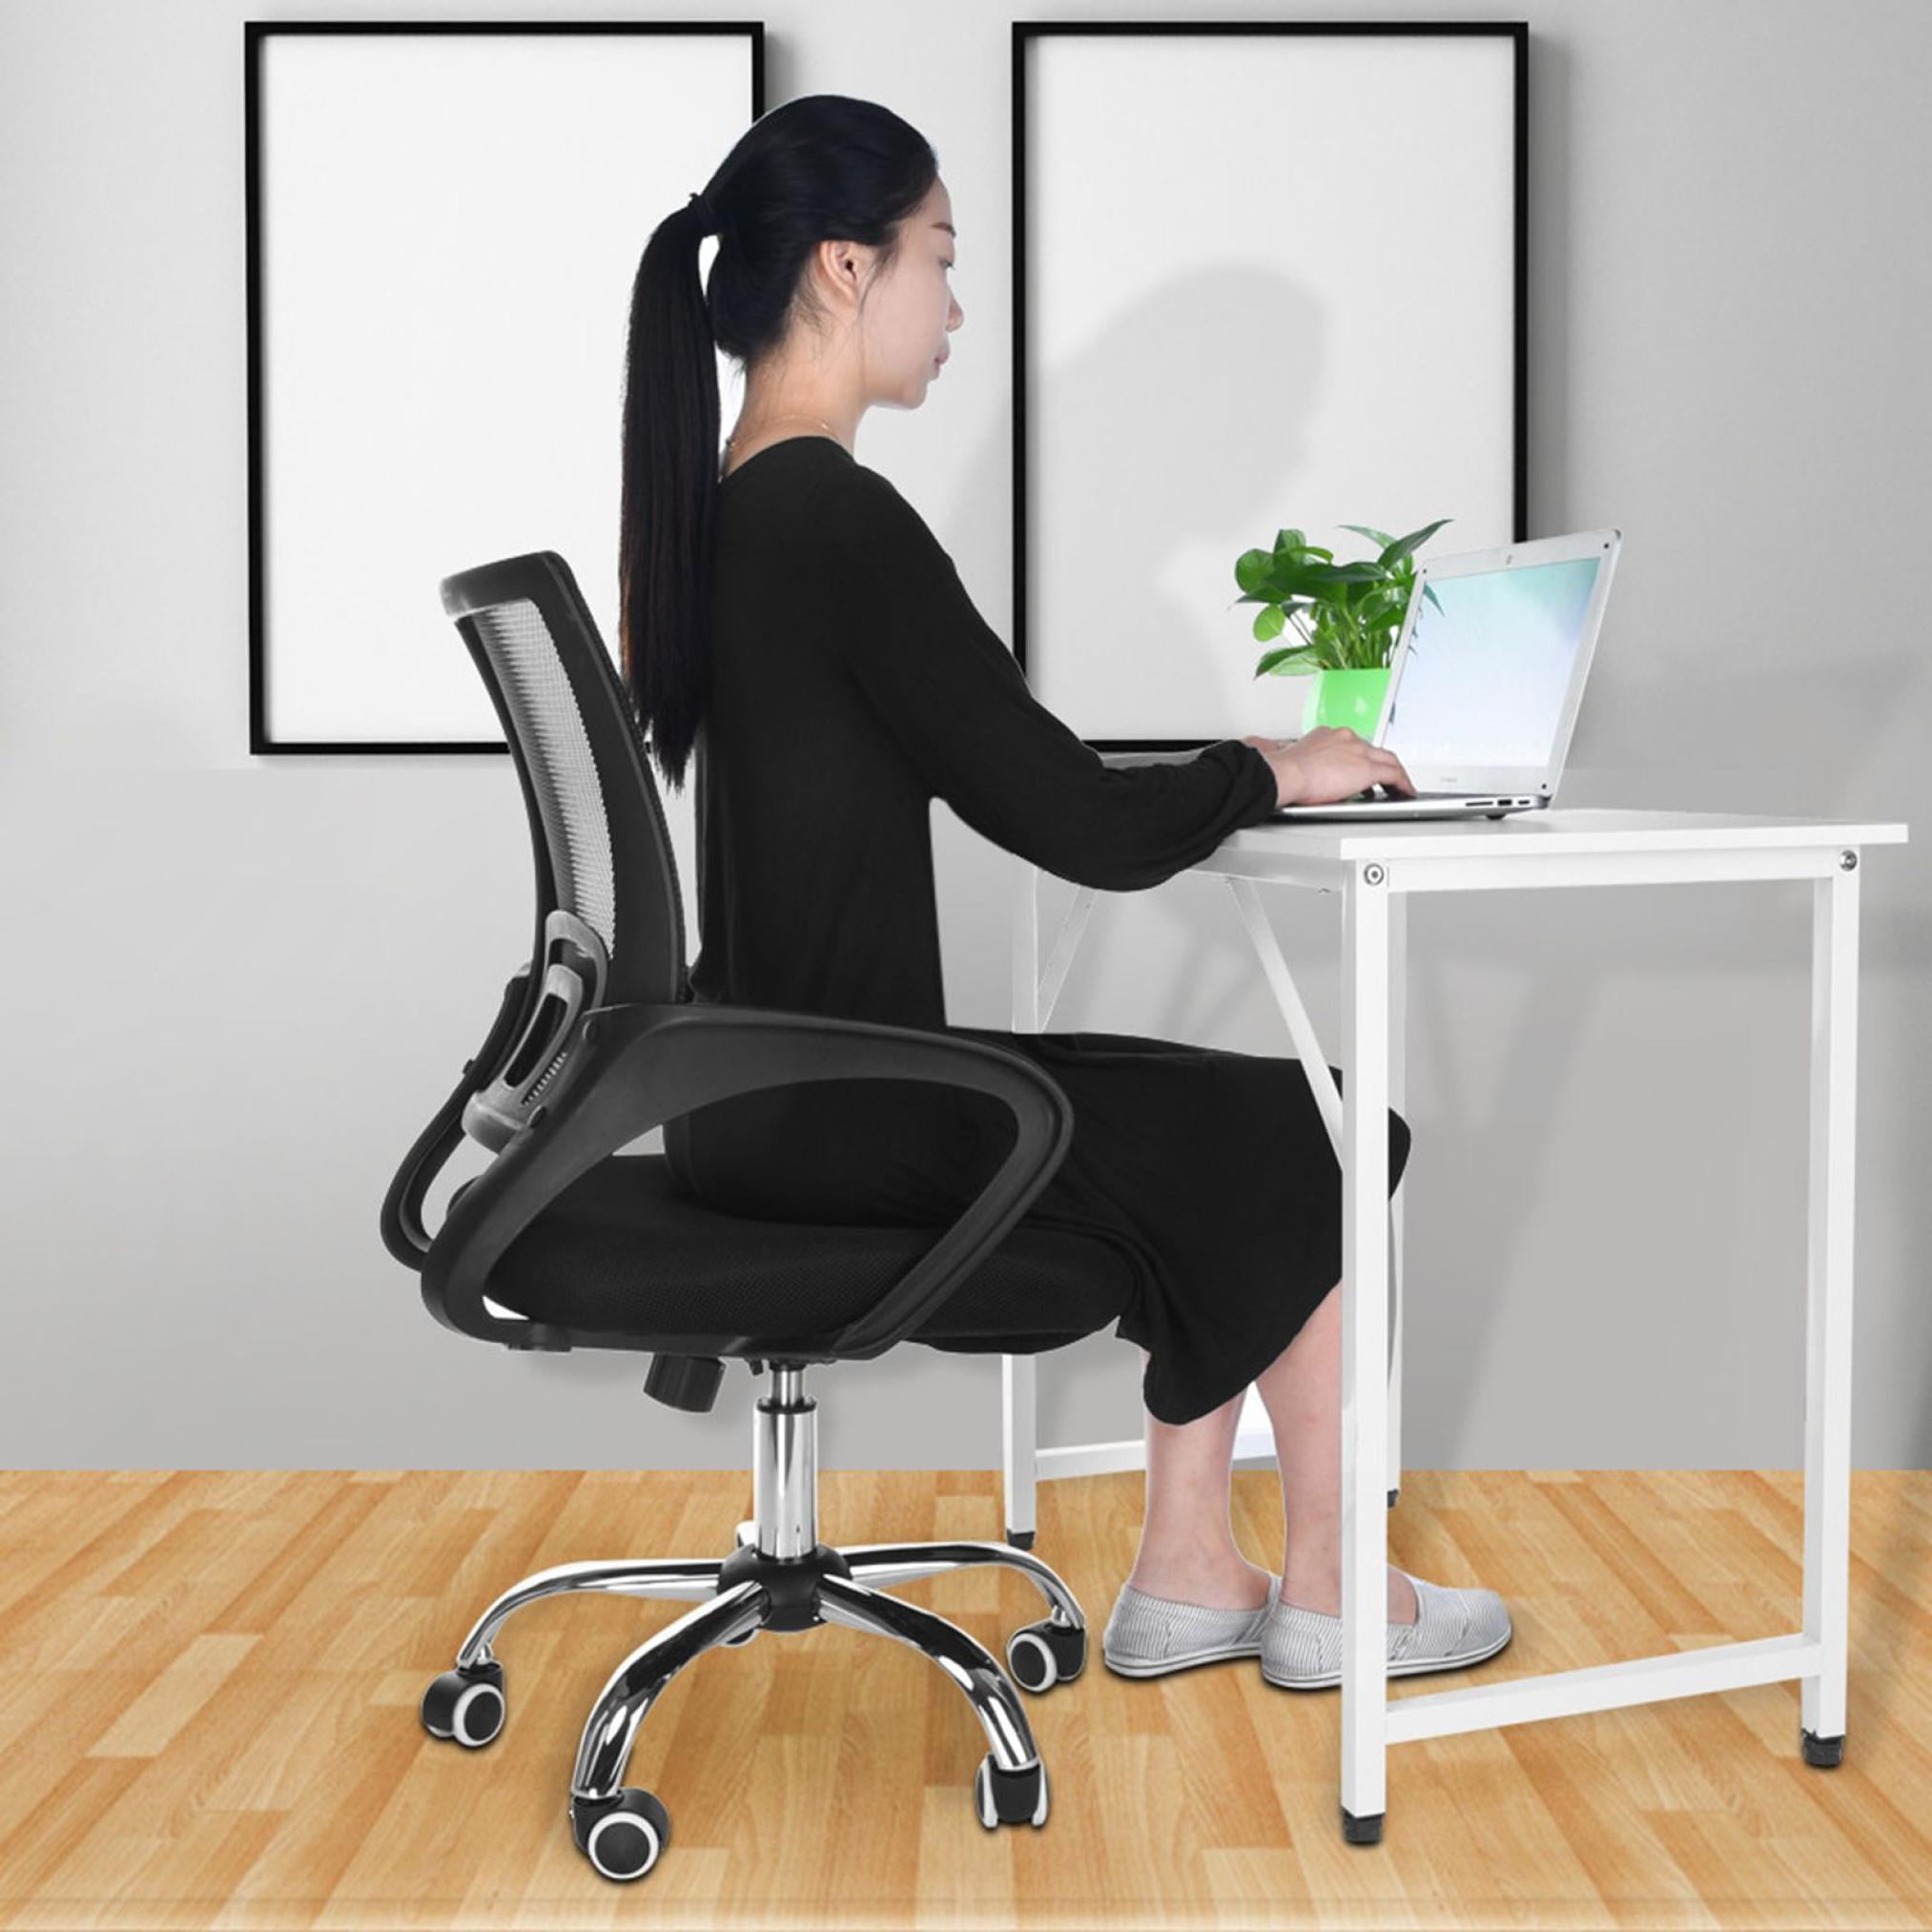 Details about   2 Pc Home Office Mesh Chair Ergonomic Cheap Desk Computer Lumbar Support Armrest